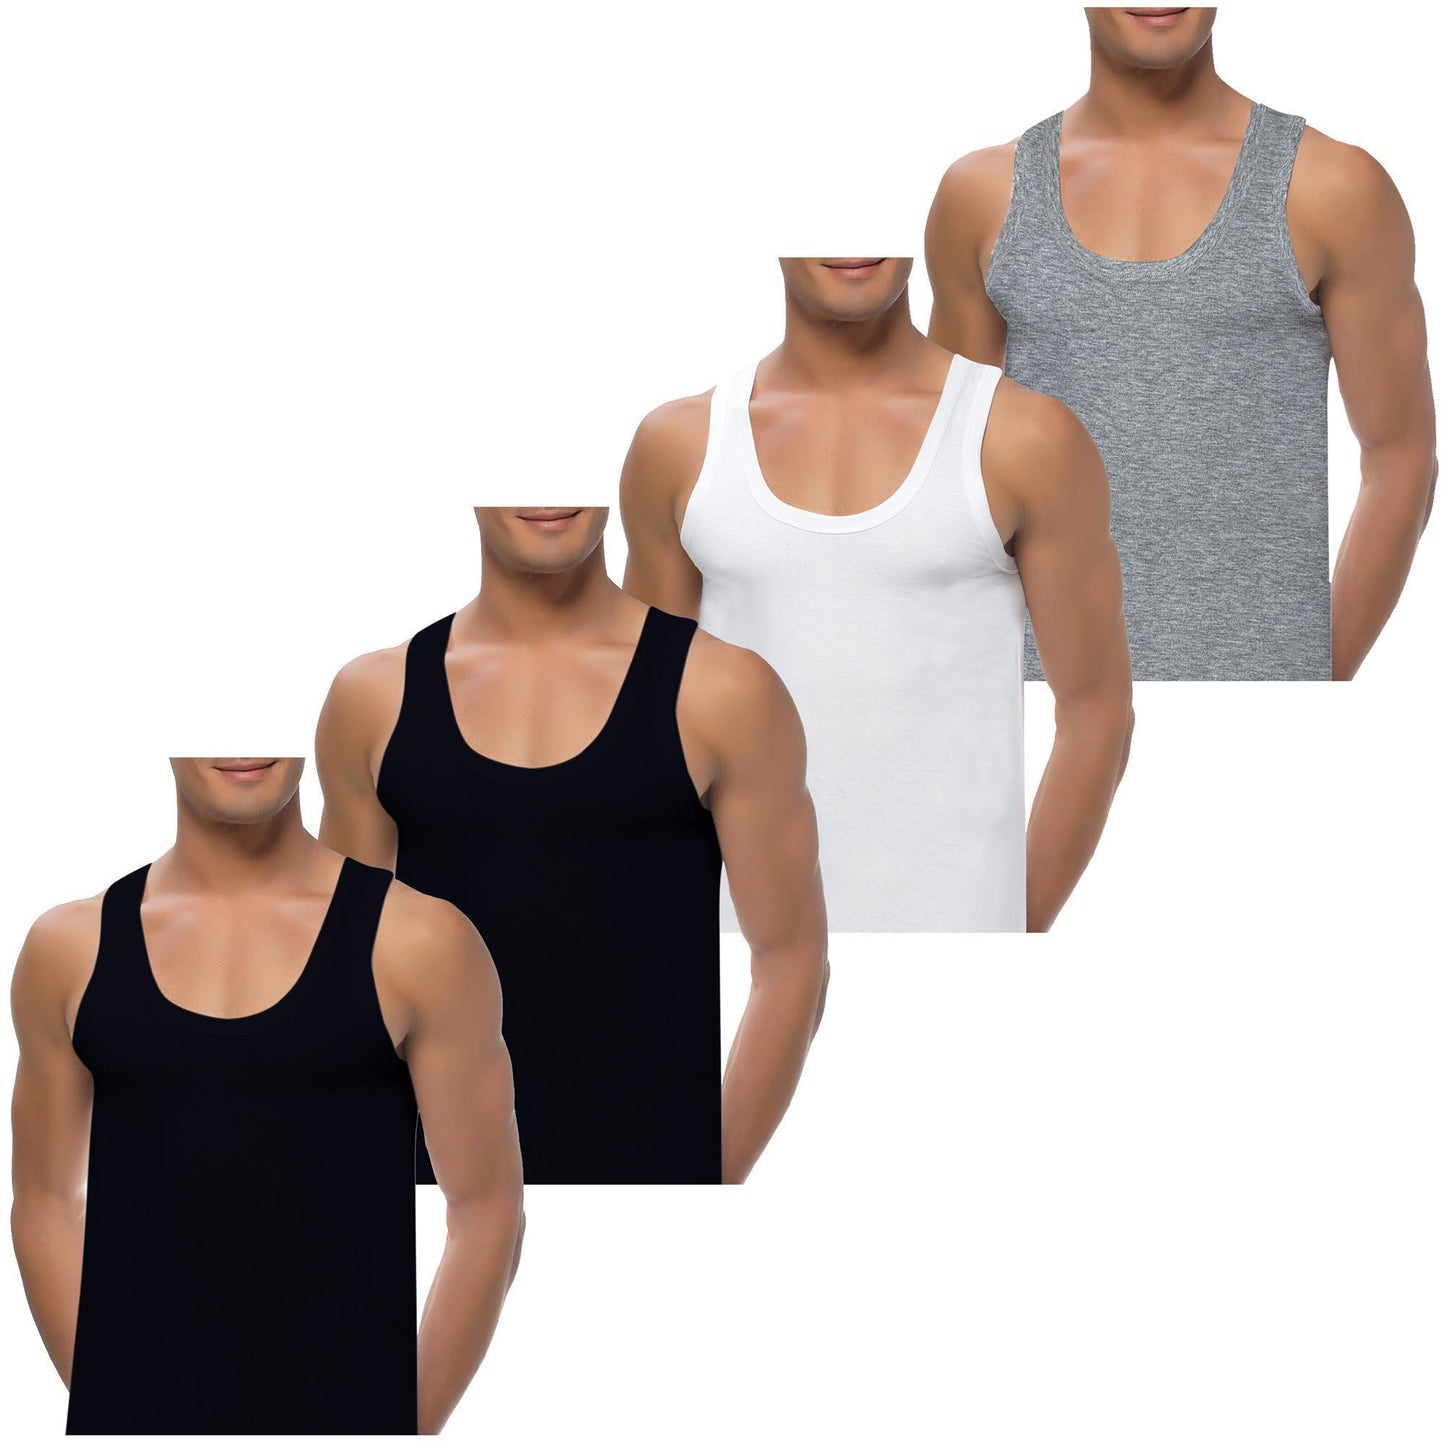 4 Herren Unterhemden extralang long 100% Baumwolle Feinripp glatt Achselhemd Weiss Schwarz 5-2 S-5XL